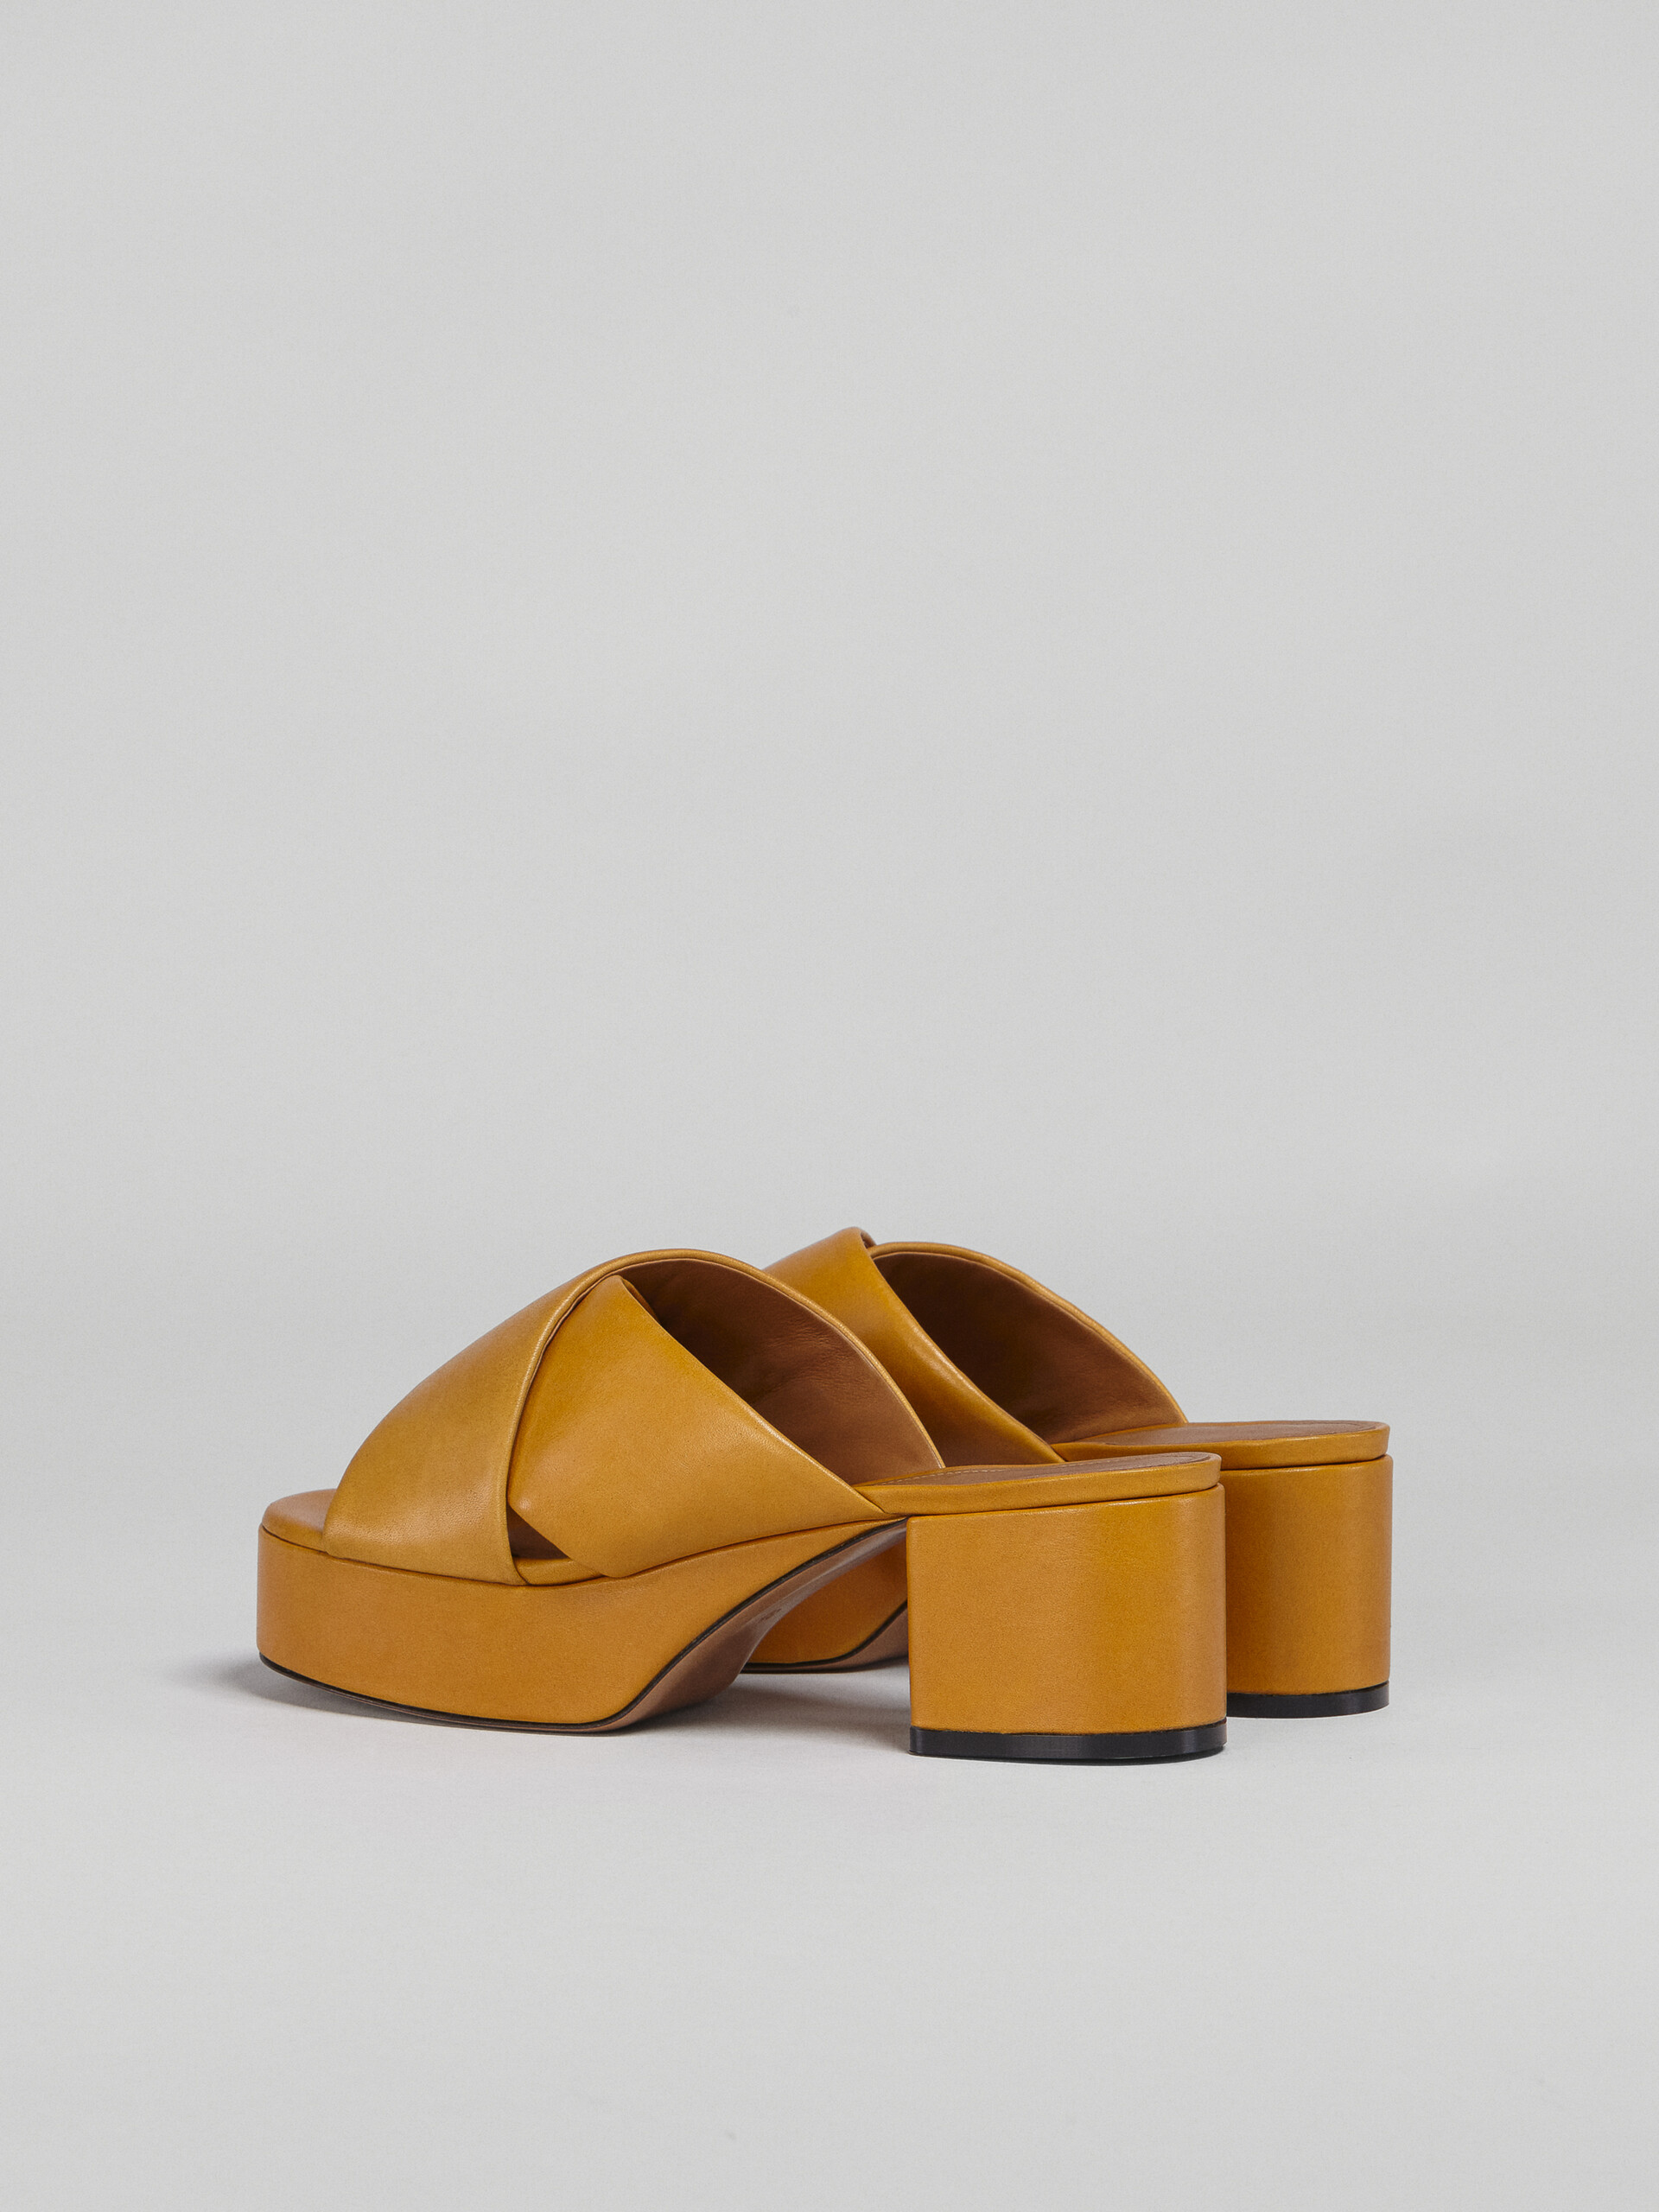 Sandale en cuir jaune tannage végétal - Sandales - Image 3